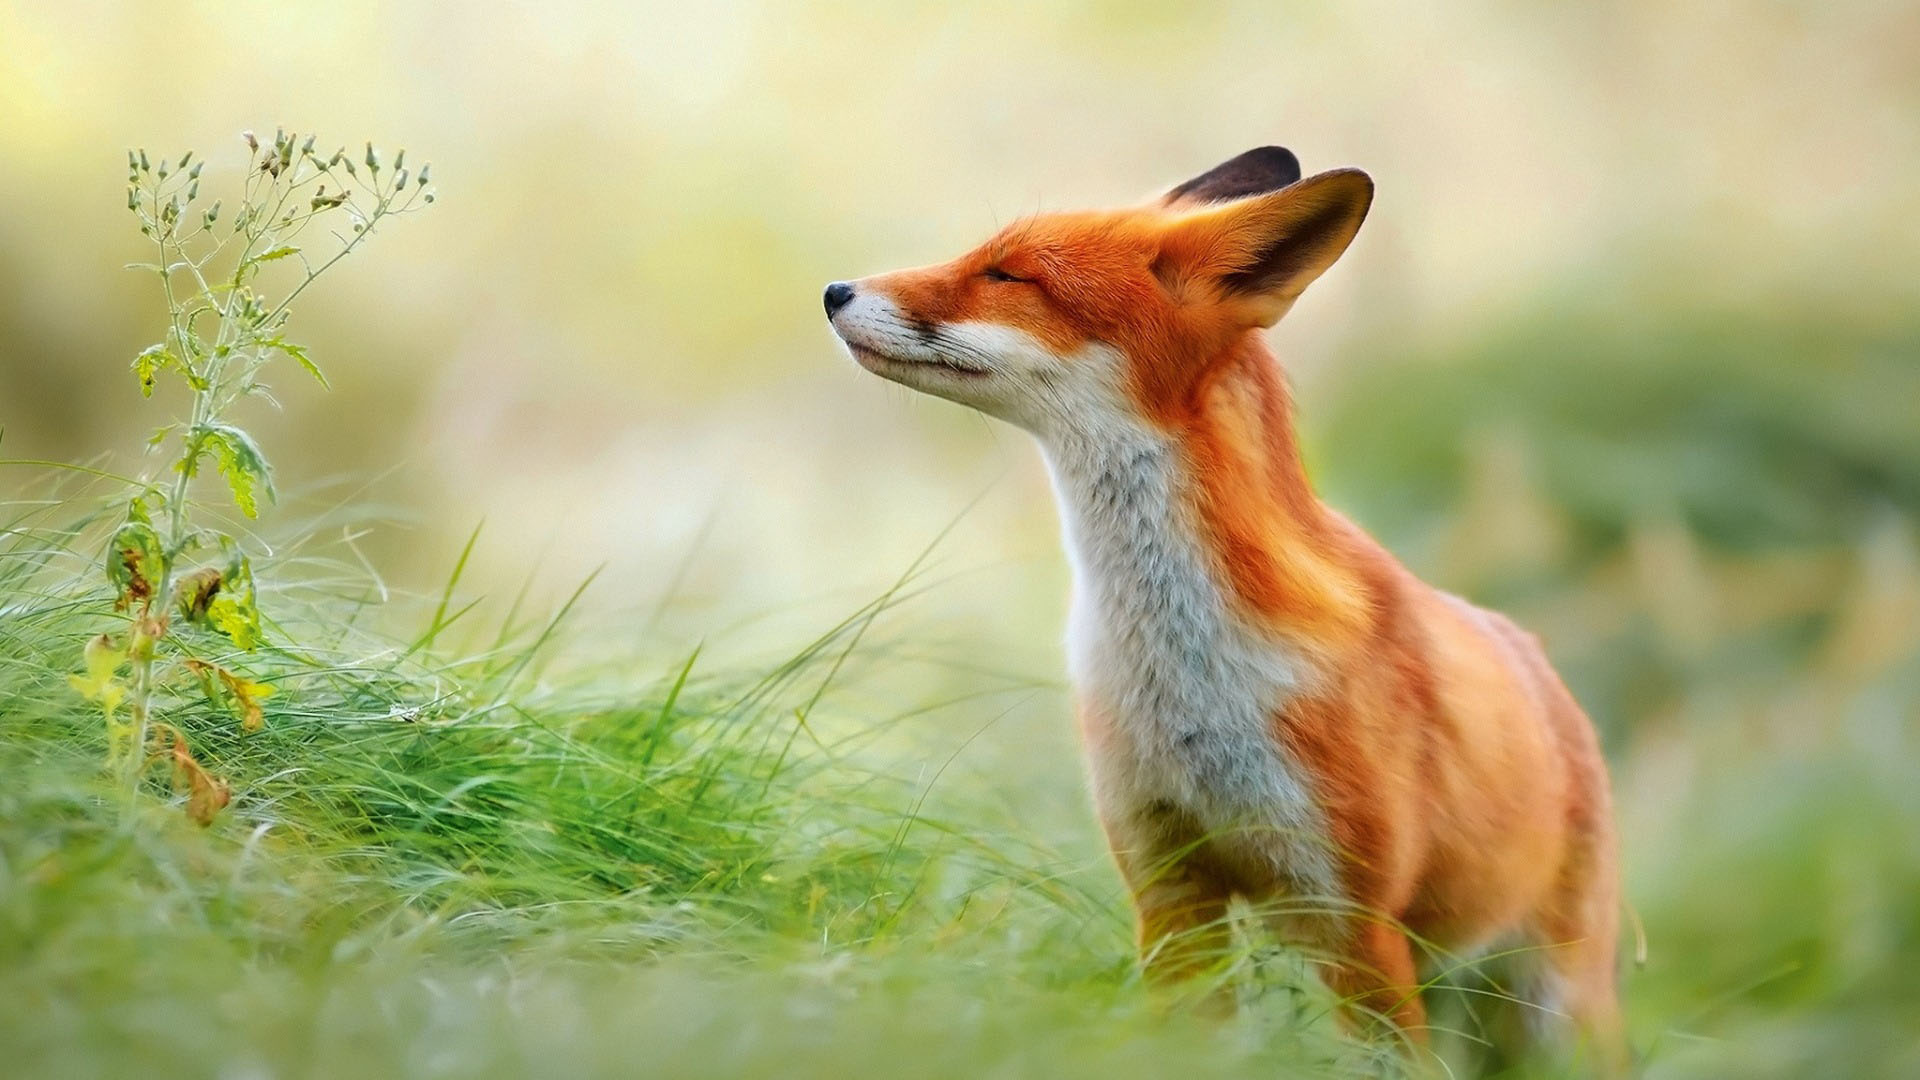 高清晰红狐狸动物壁纸